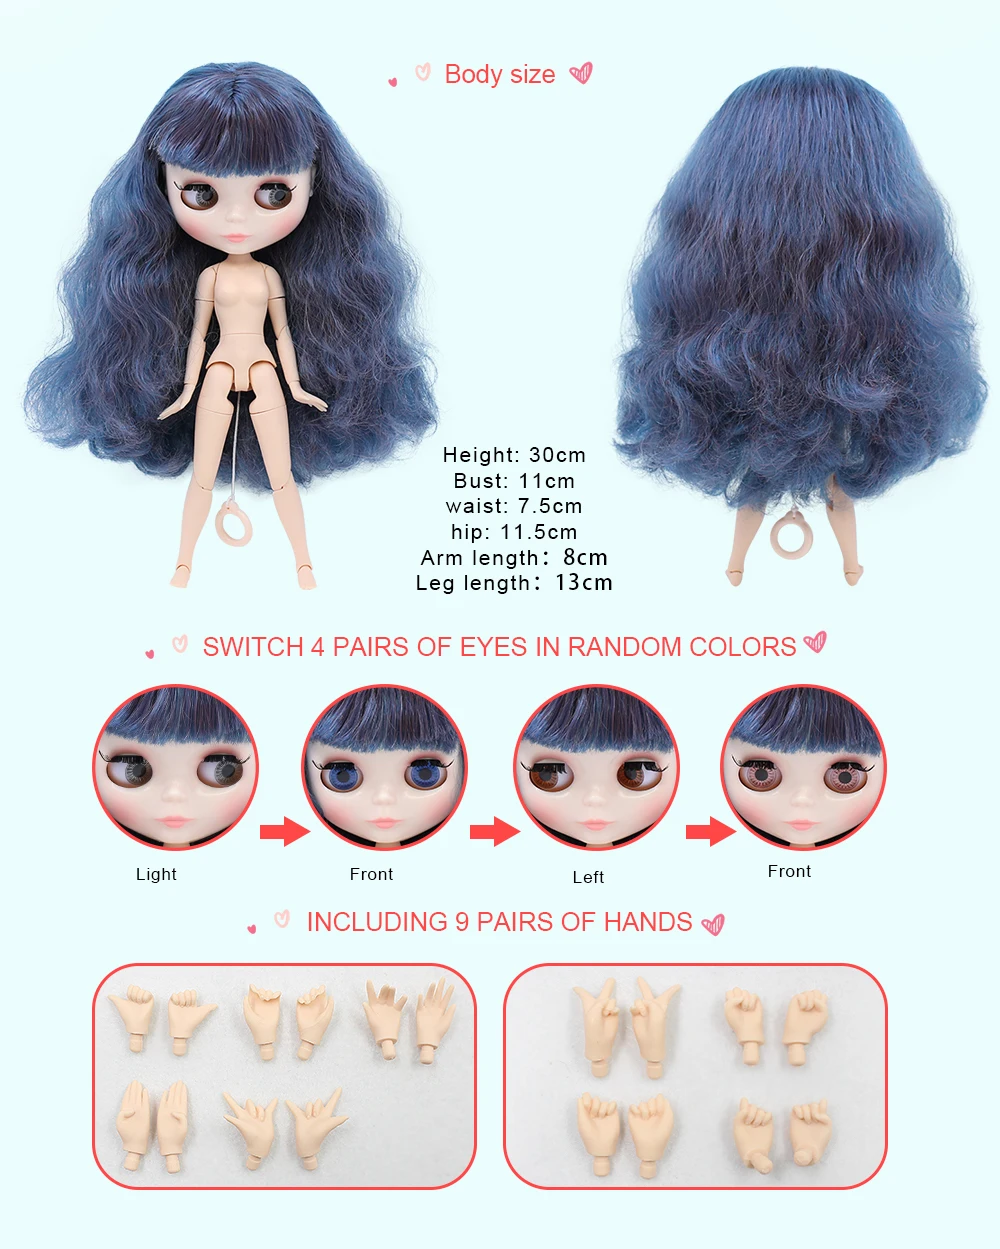 Mia - Premium Custom Neo Blythe Muñeca con cabello azul, piel blanca y cara linda brillante 1